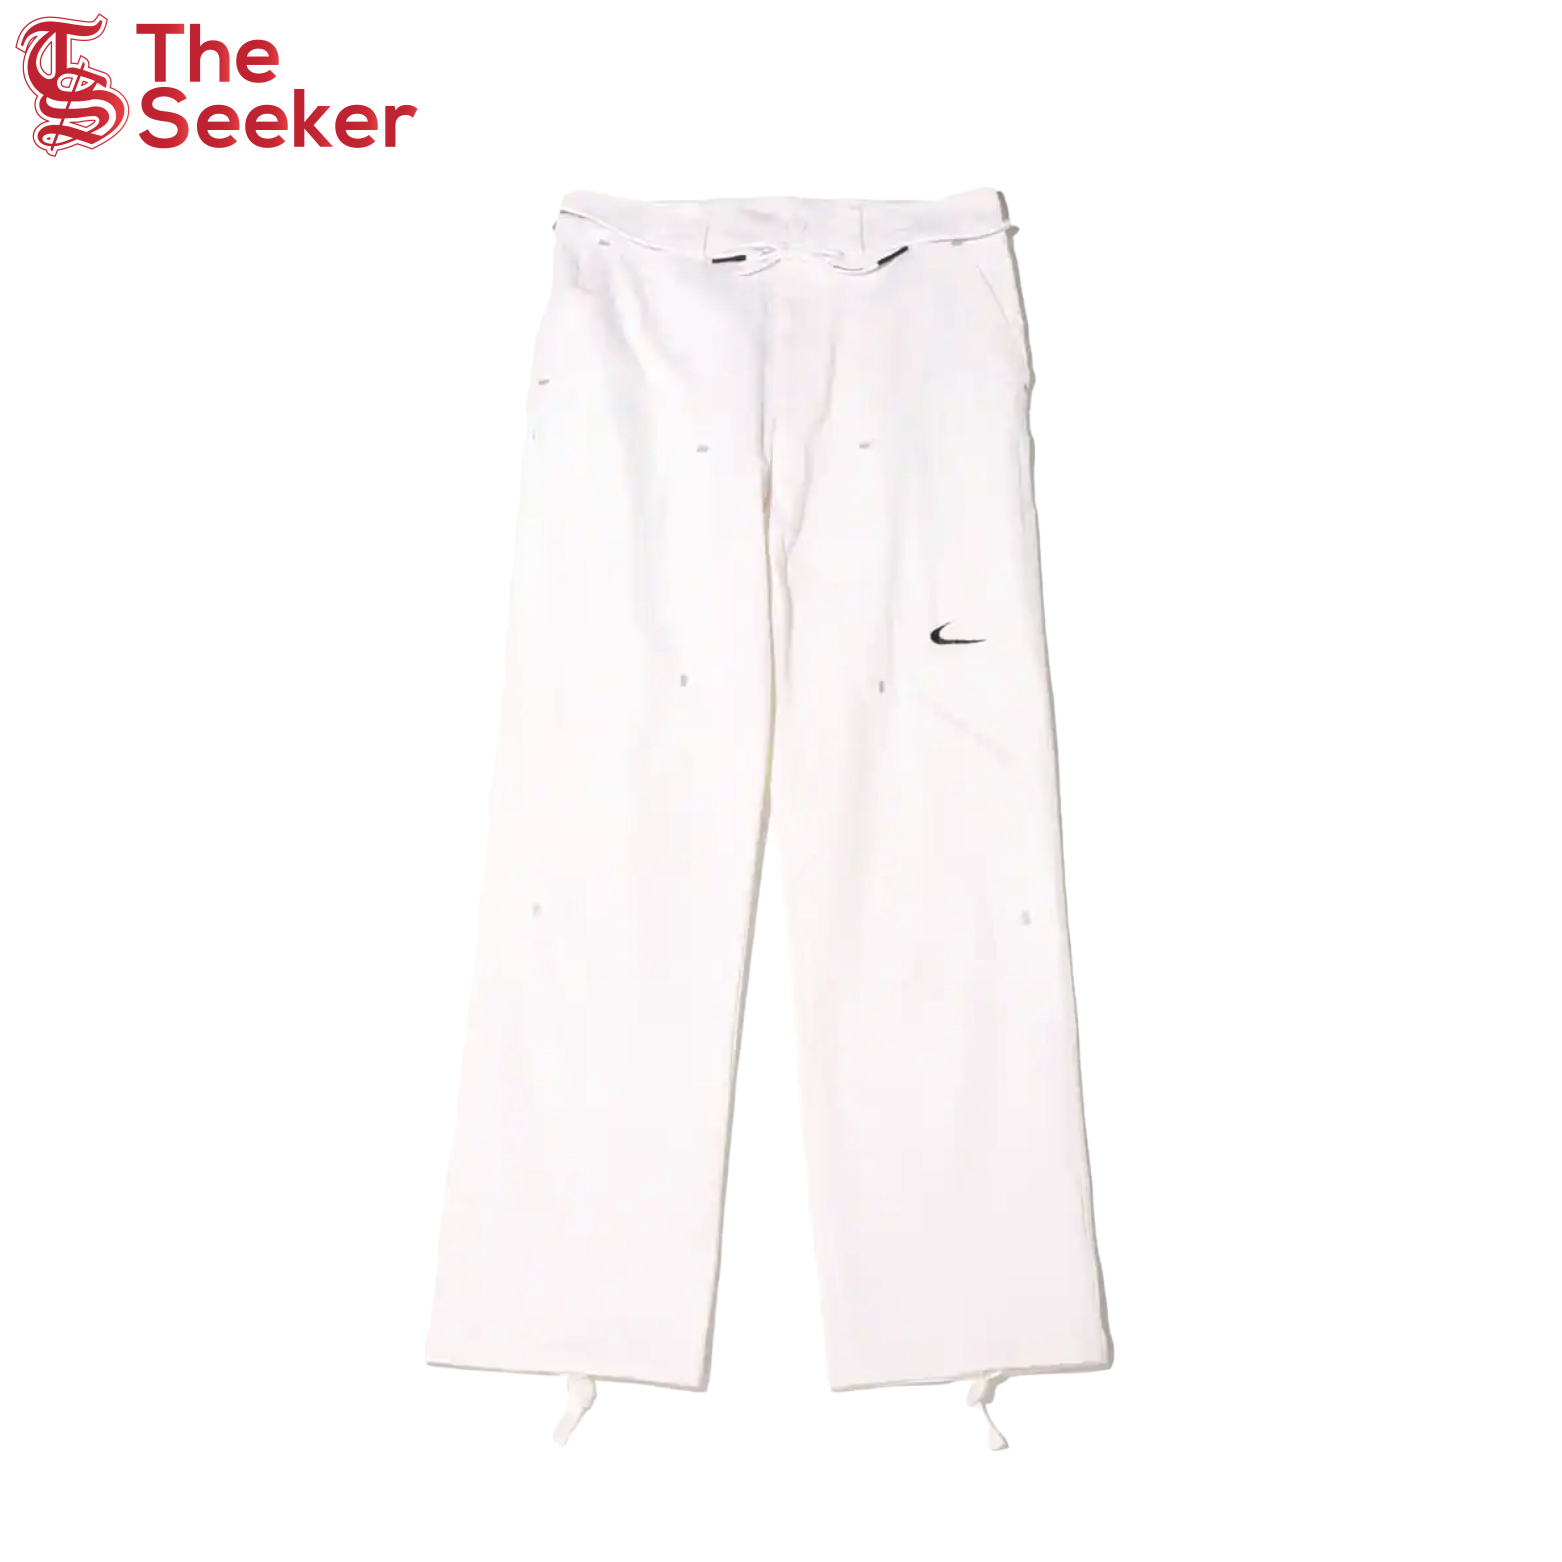 OFF-WHITE x Nike Pants White